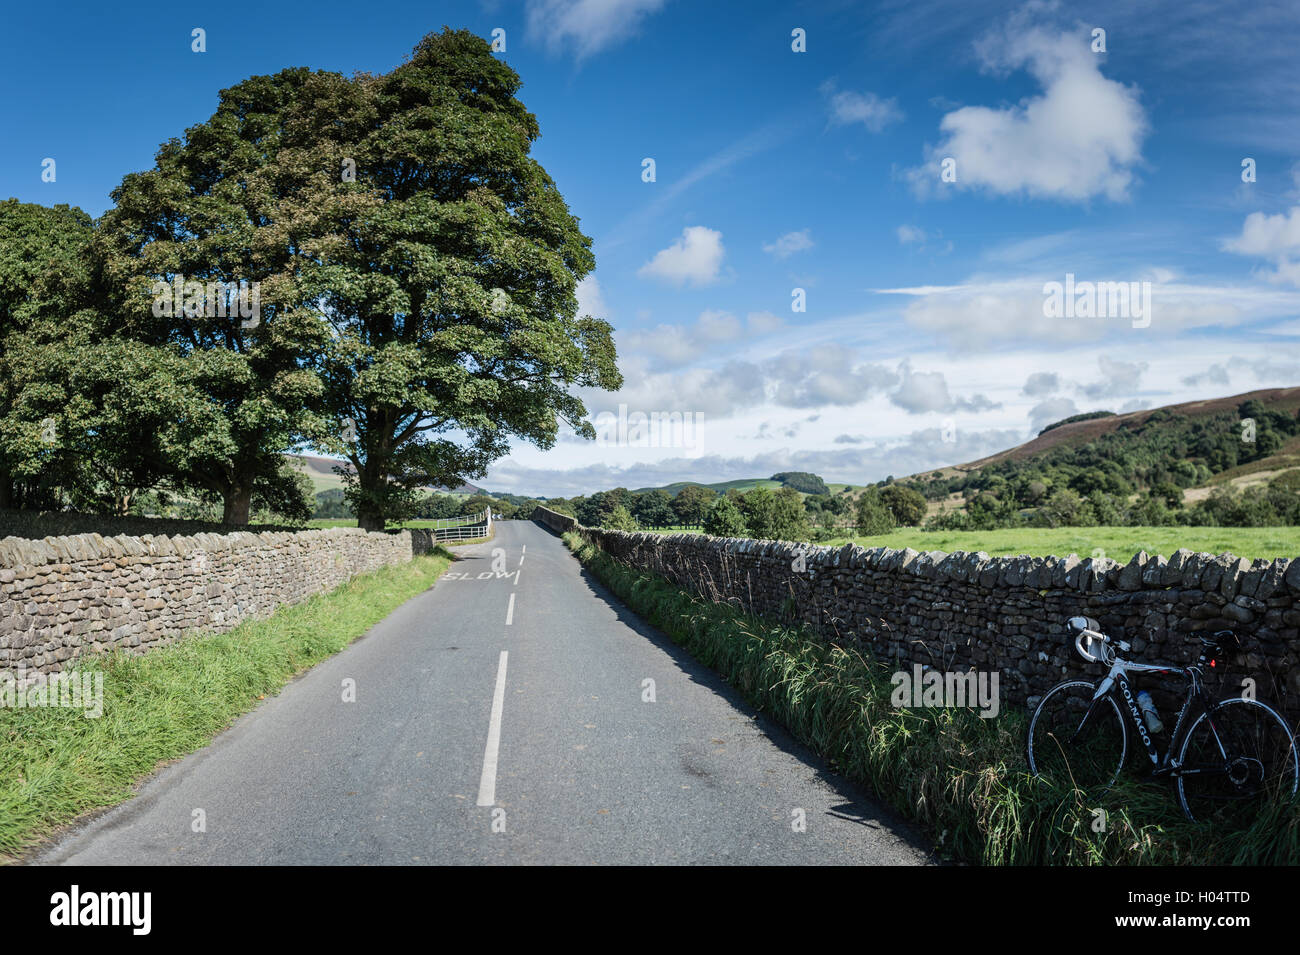 Una breve sosta per un ciclista nella valle Hodder, Lancashire, nord ovest Inghilterra, Regno Unito. Foto Stock